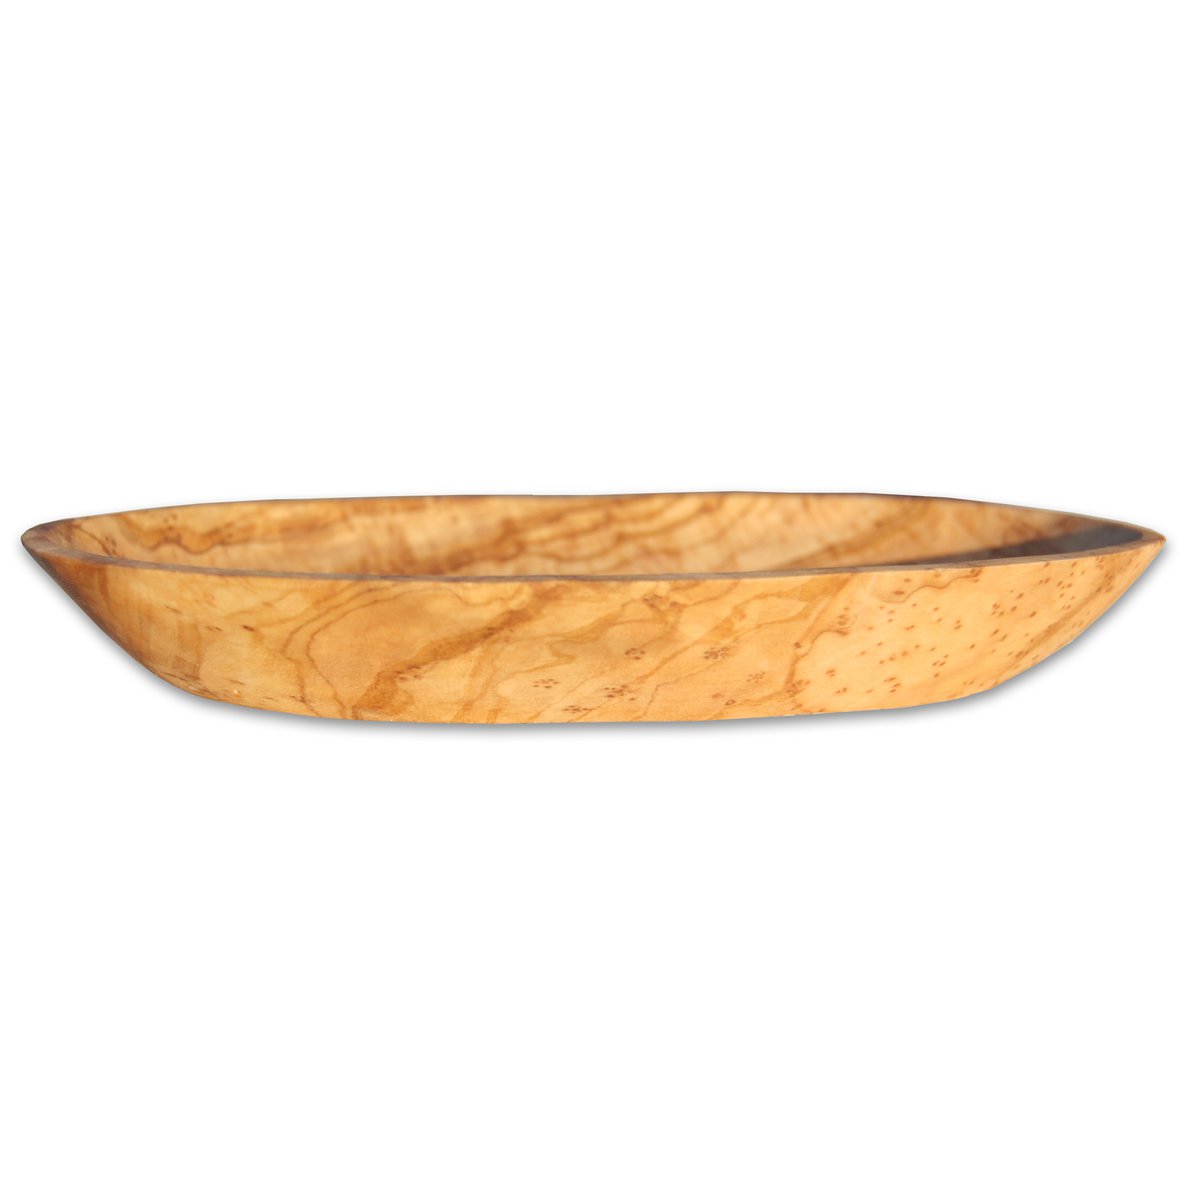 Seifenschale oval ca. 14 – 16 cm aus Olivenholz